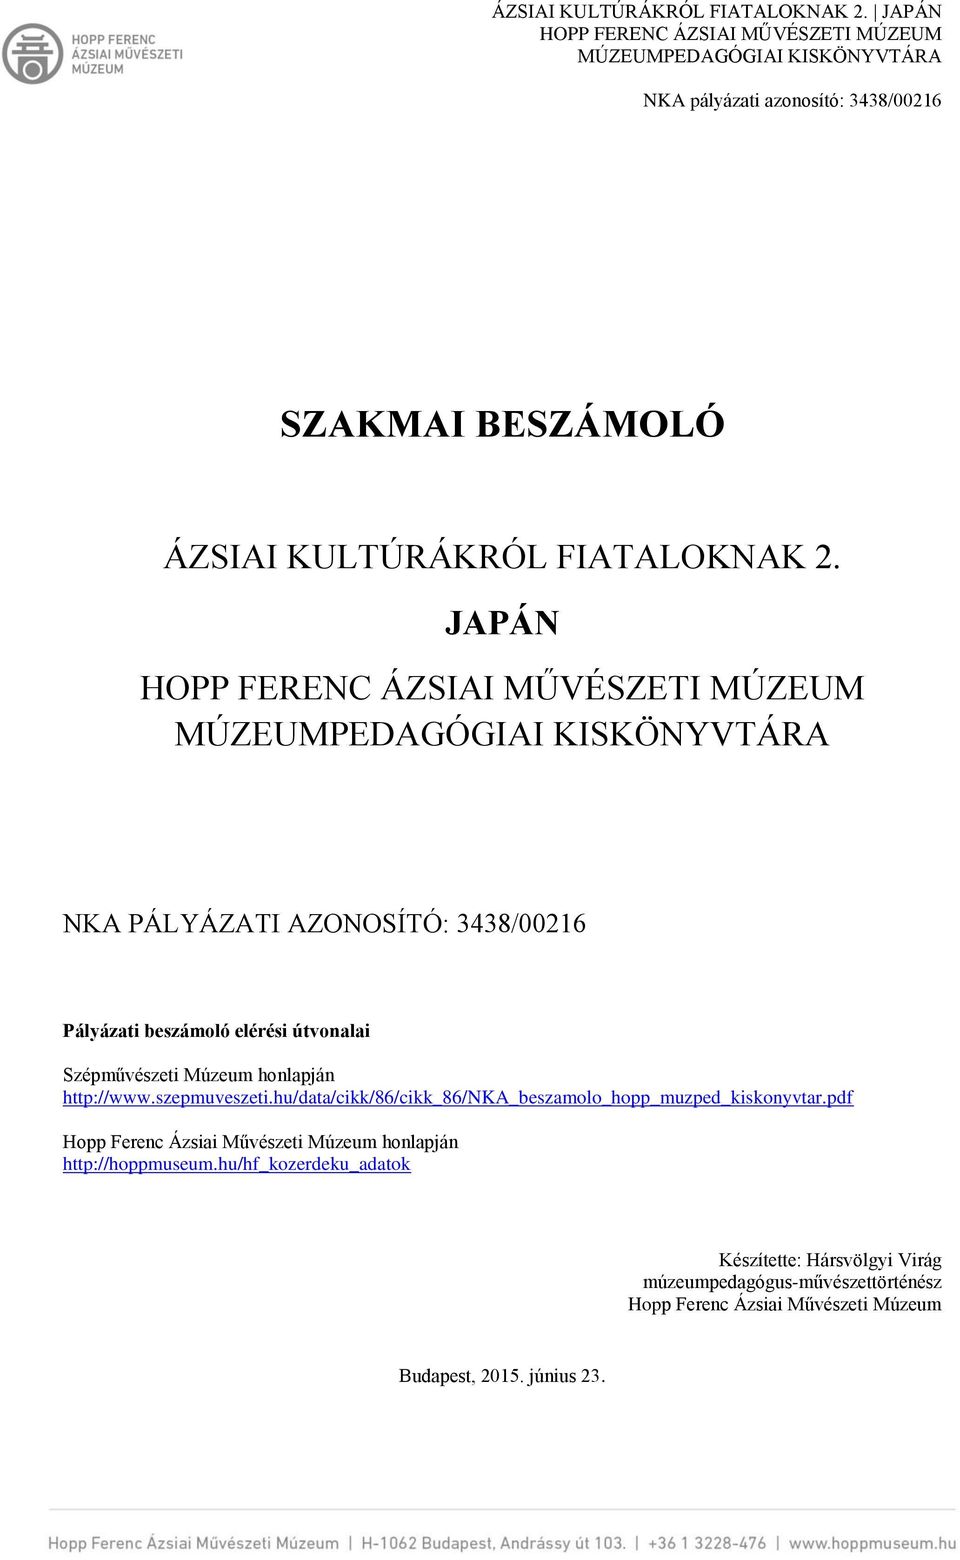 http://www.szepmuveszeti.hu/data/cikk/86/cikk_86/nka_beszamolo_hopp_muzped_kiskonyvtar.